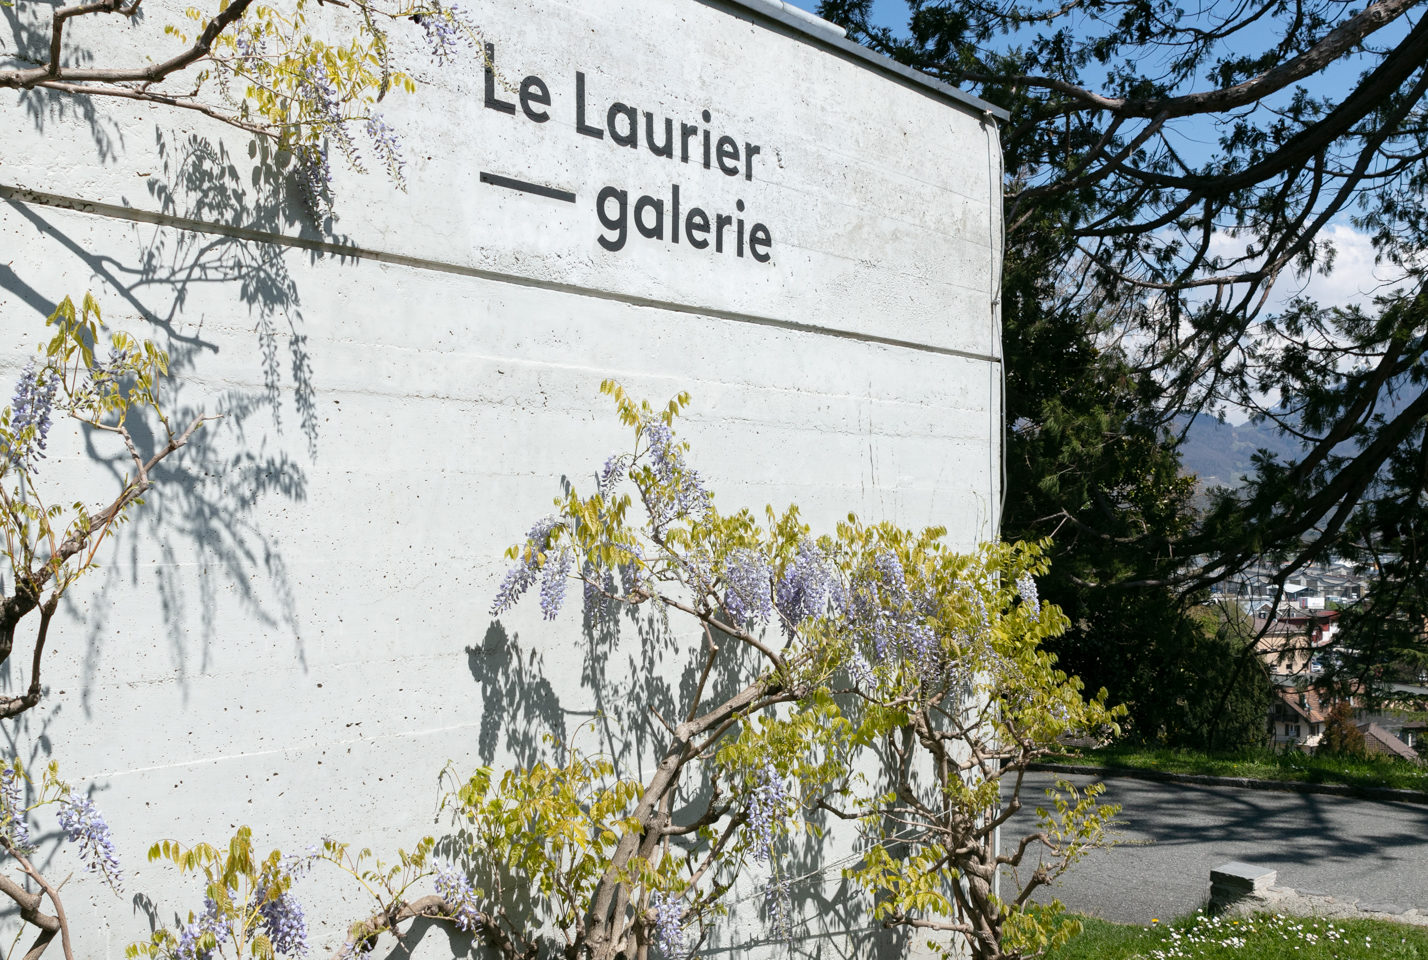 Le Laurier galerie - Malévoz Quartier Culturel